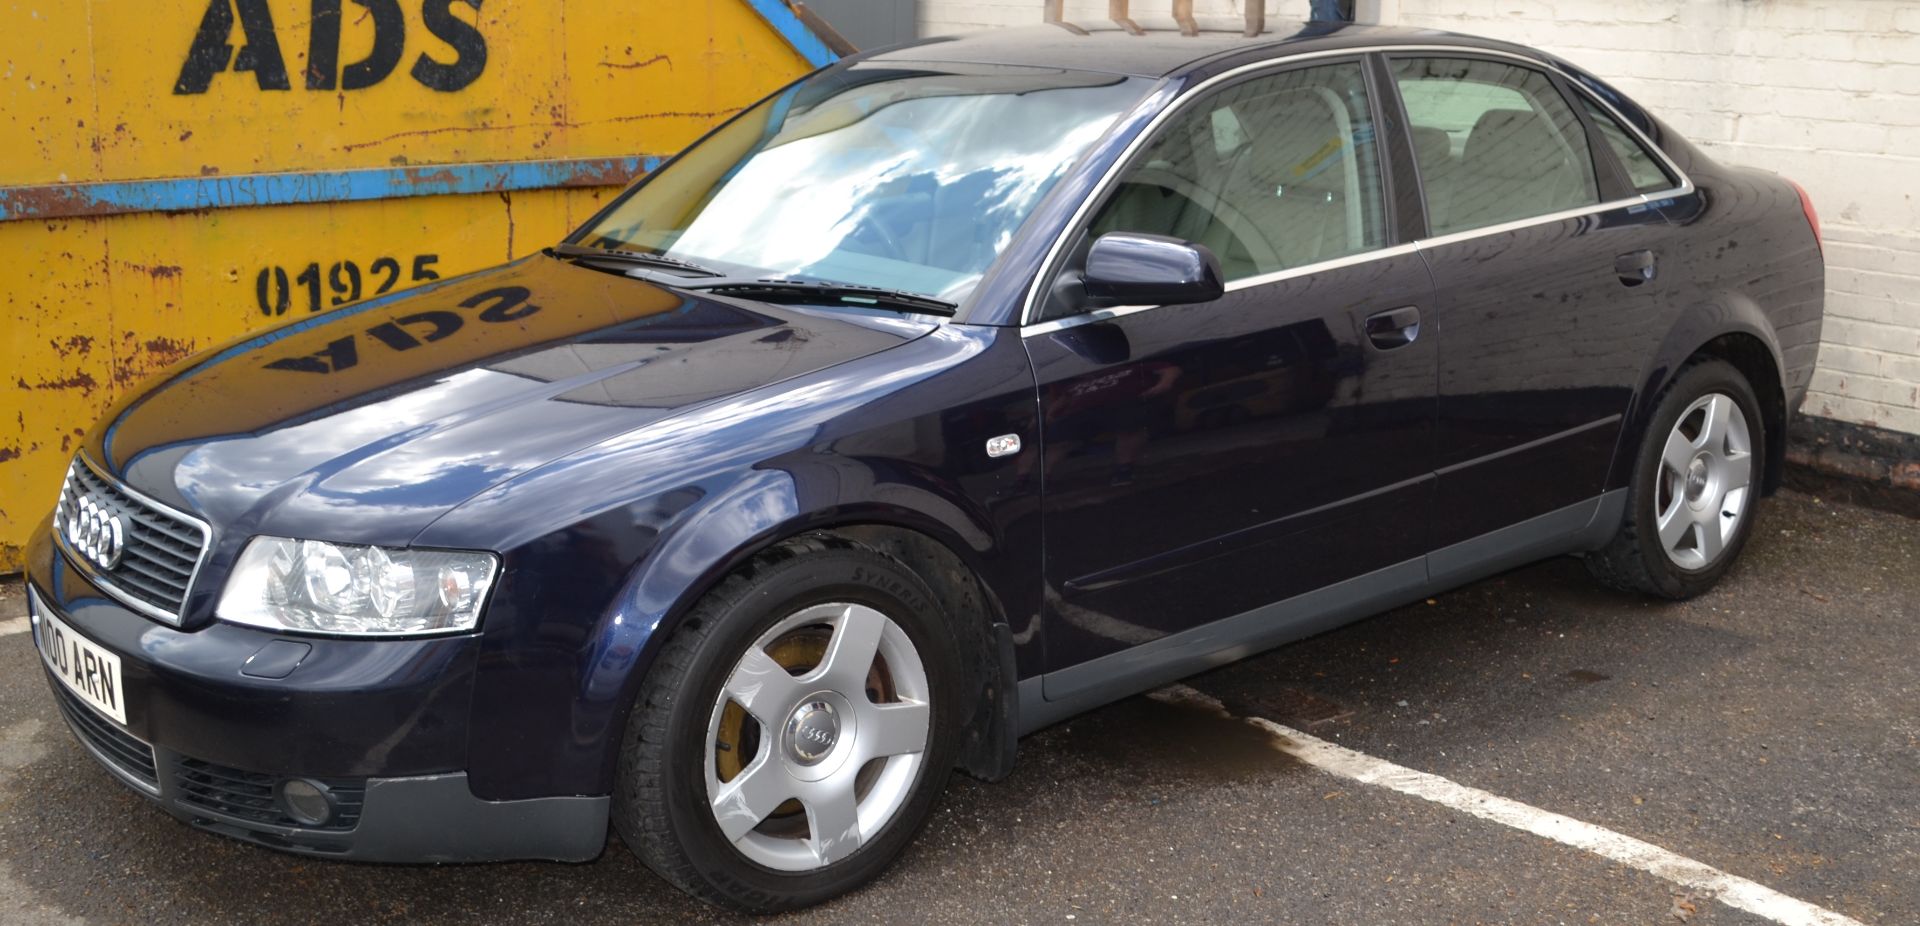 Audi A4 SE Auto Blue 2.4L - CL011 - Location: Altrincham WA14 - Image 2 of 13